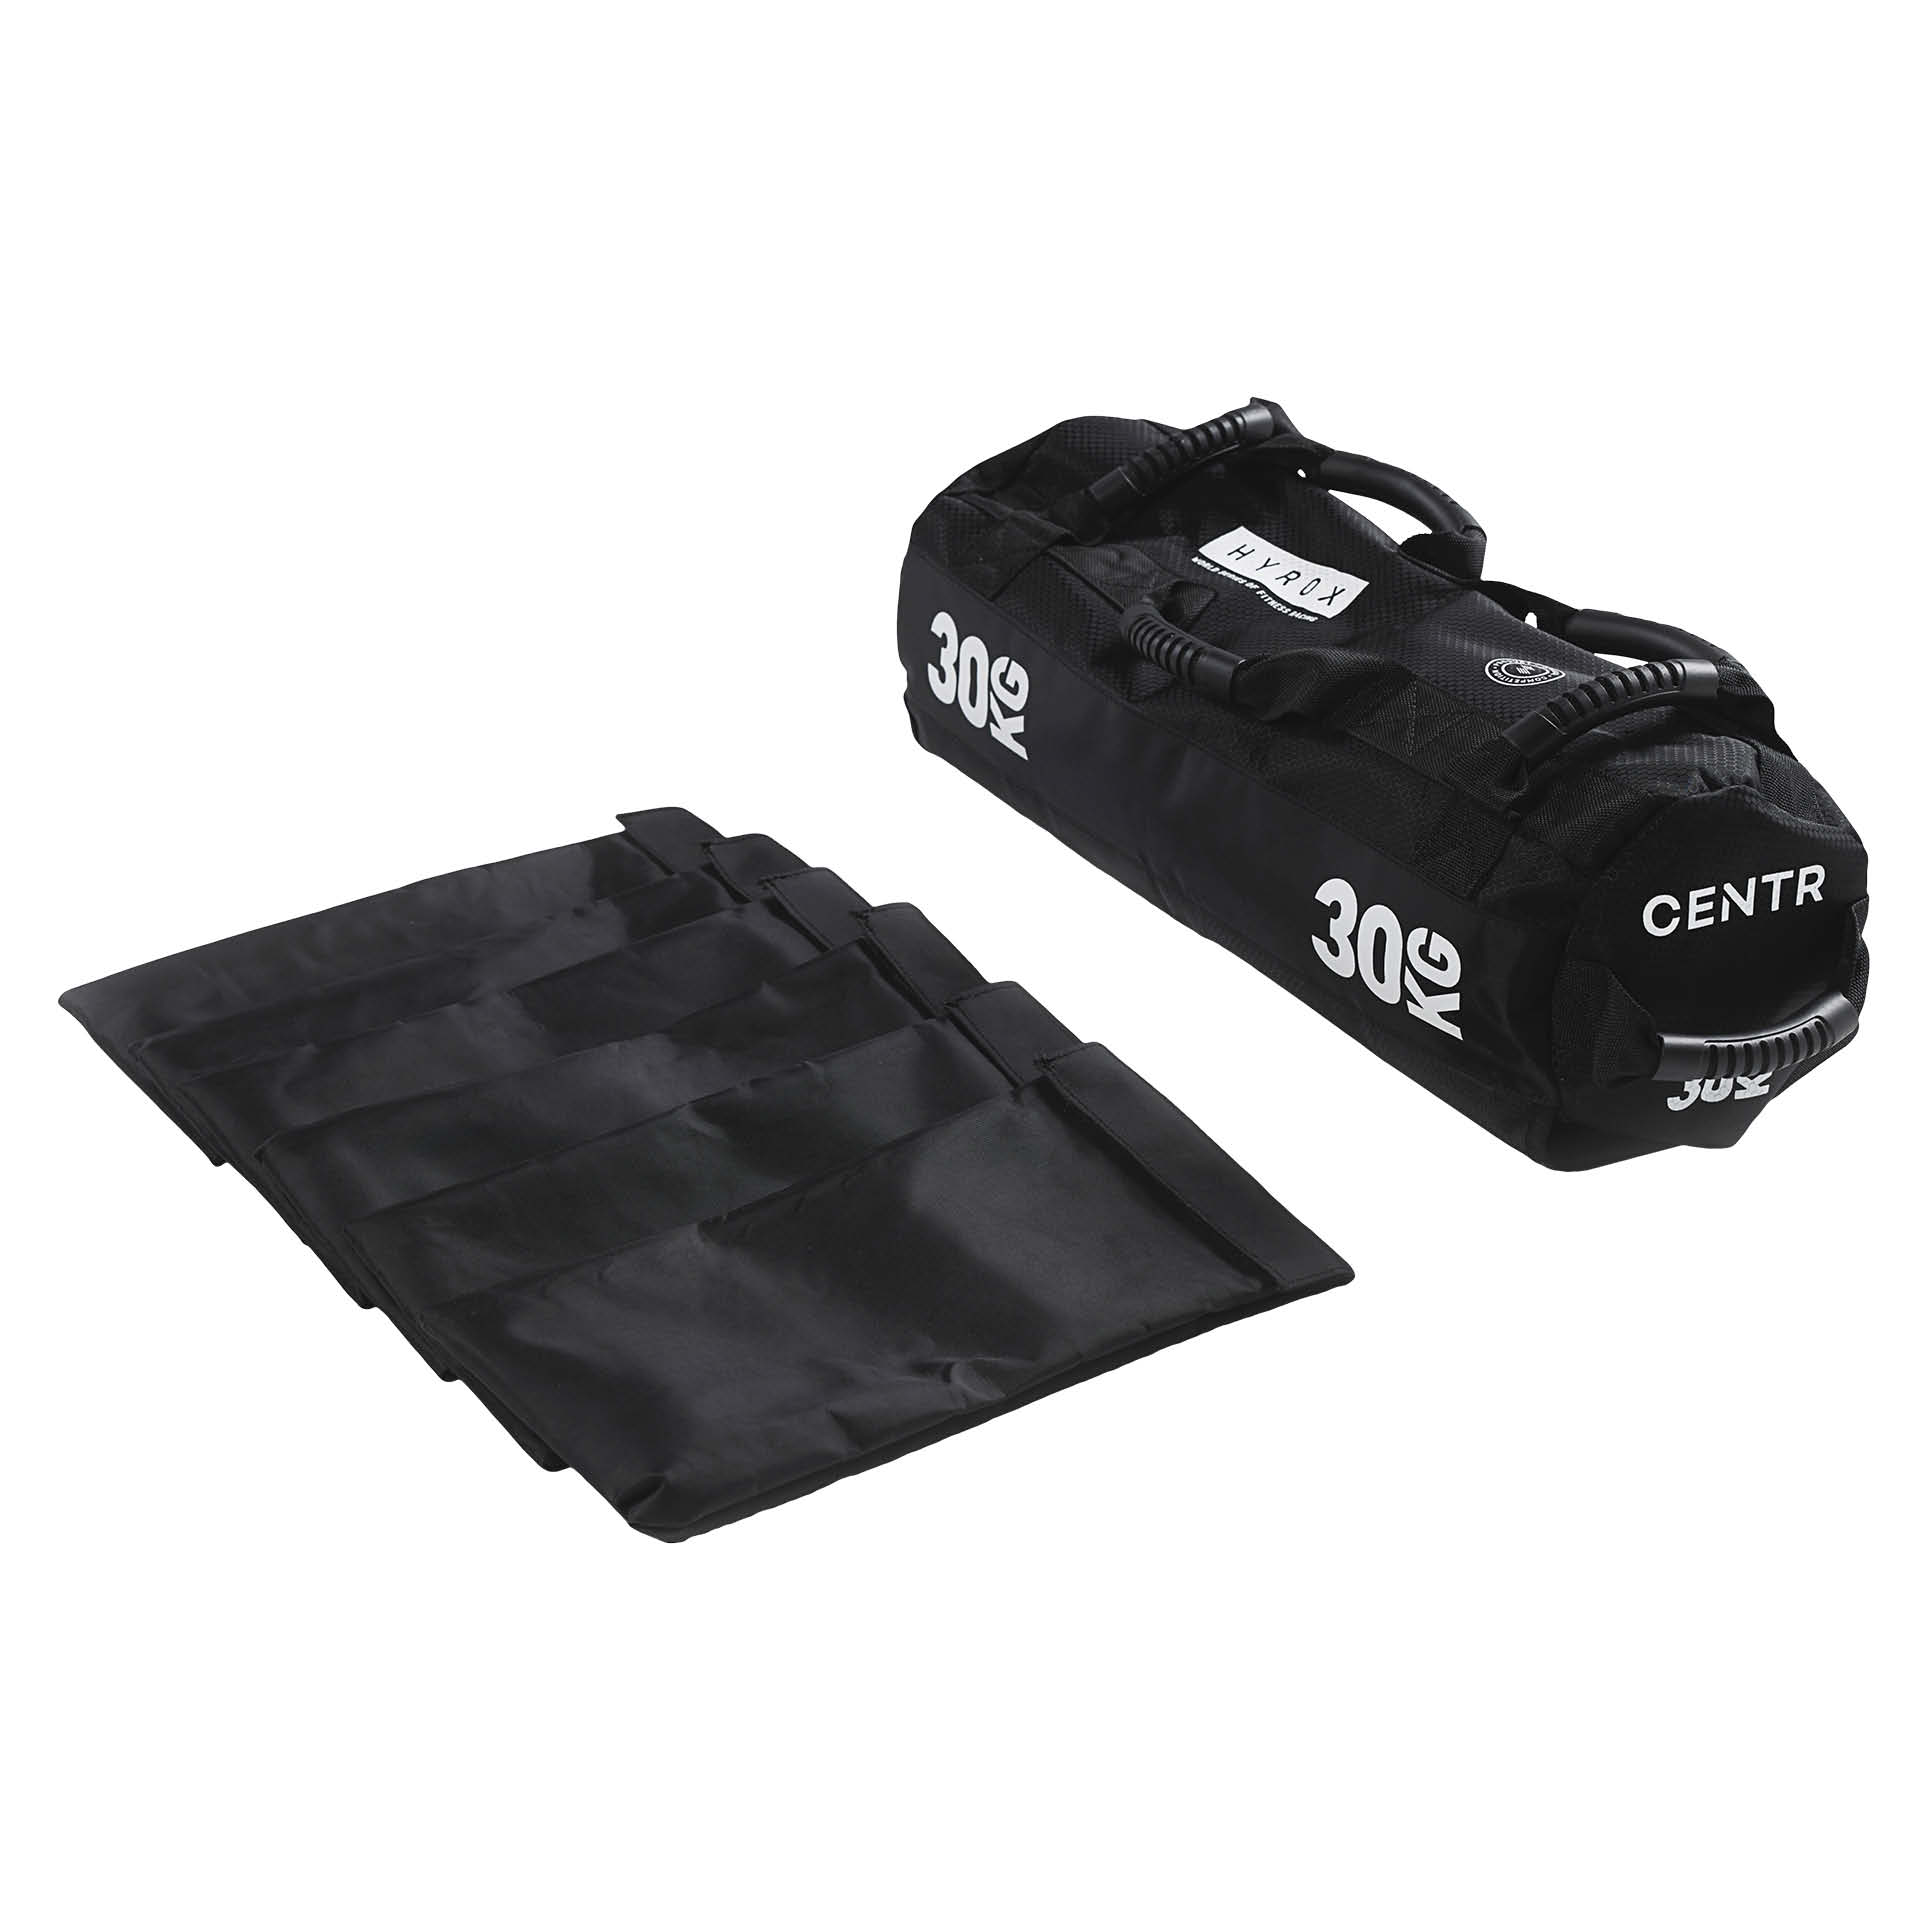 CENTR x HYROX Competition Sandbag - 30 kg (kommt unbefüllt)